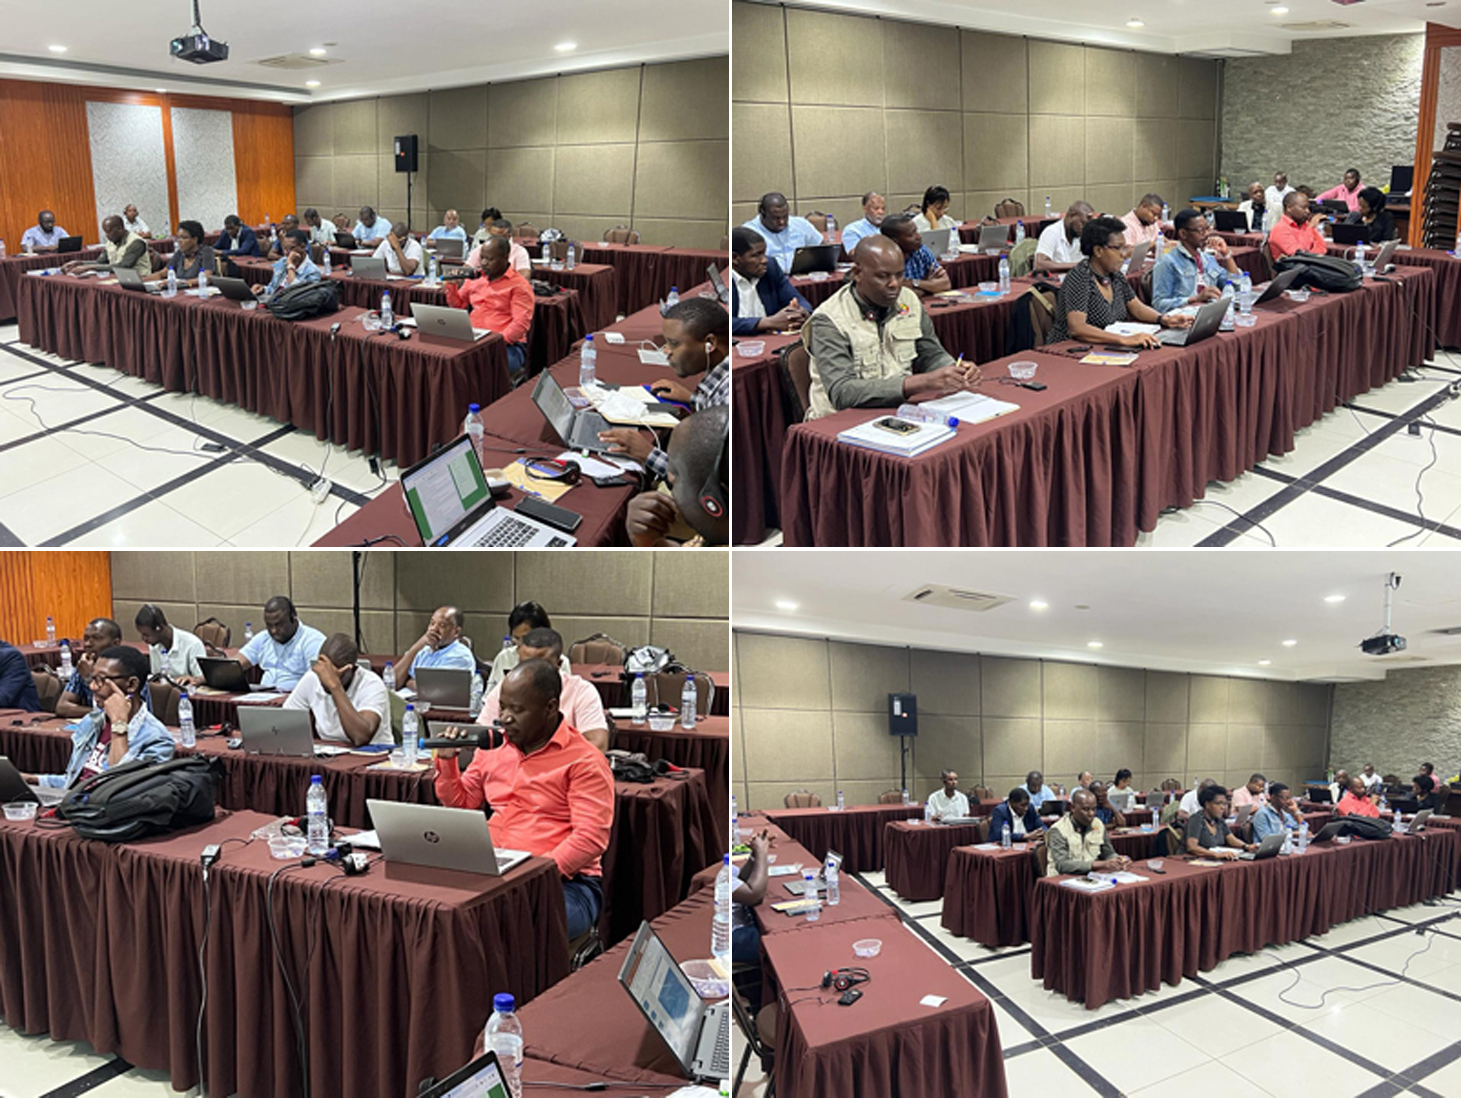 BUPUSA realiza seminário para avaliação dos planos de acção nacional para gestão de recursos hídricos transfronteiriços